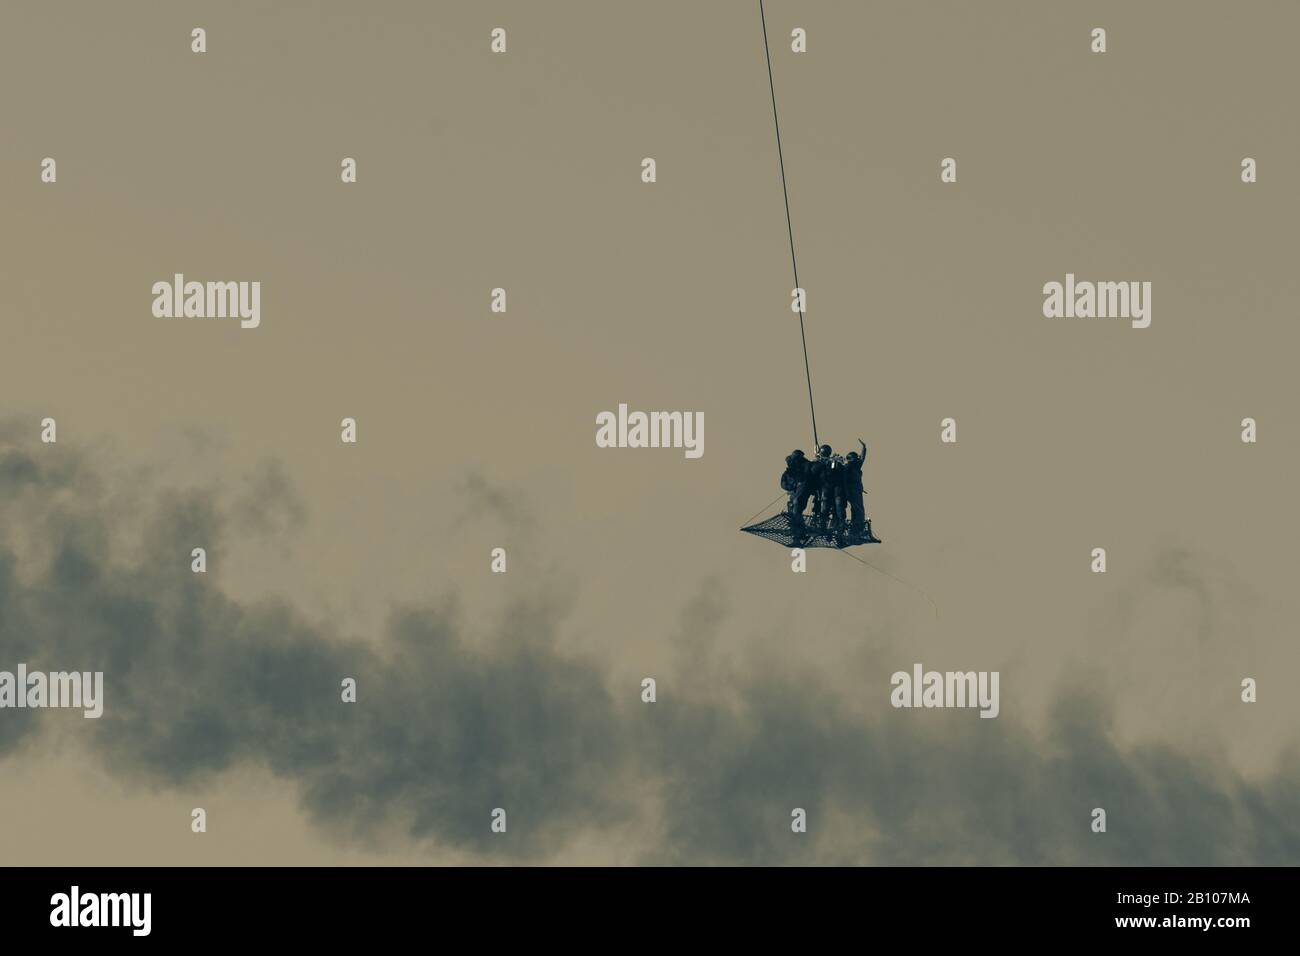 Militärische Team in Konflikt resucing Menschen durch Hubschrauber. durch die Luft fliegen auf einem Seil befestigt im Rauch und Dunst in den Nahen Osten zu Häcksler Stockfoto